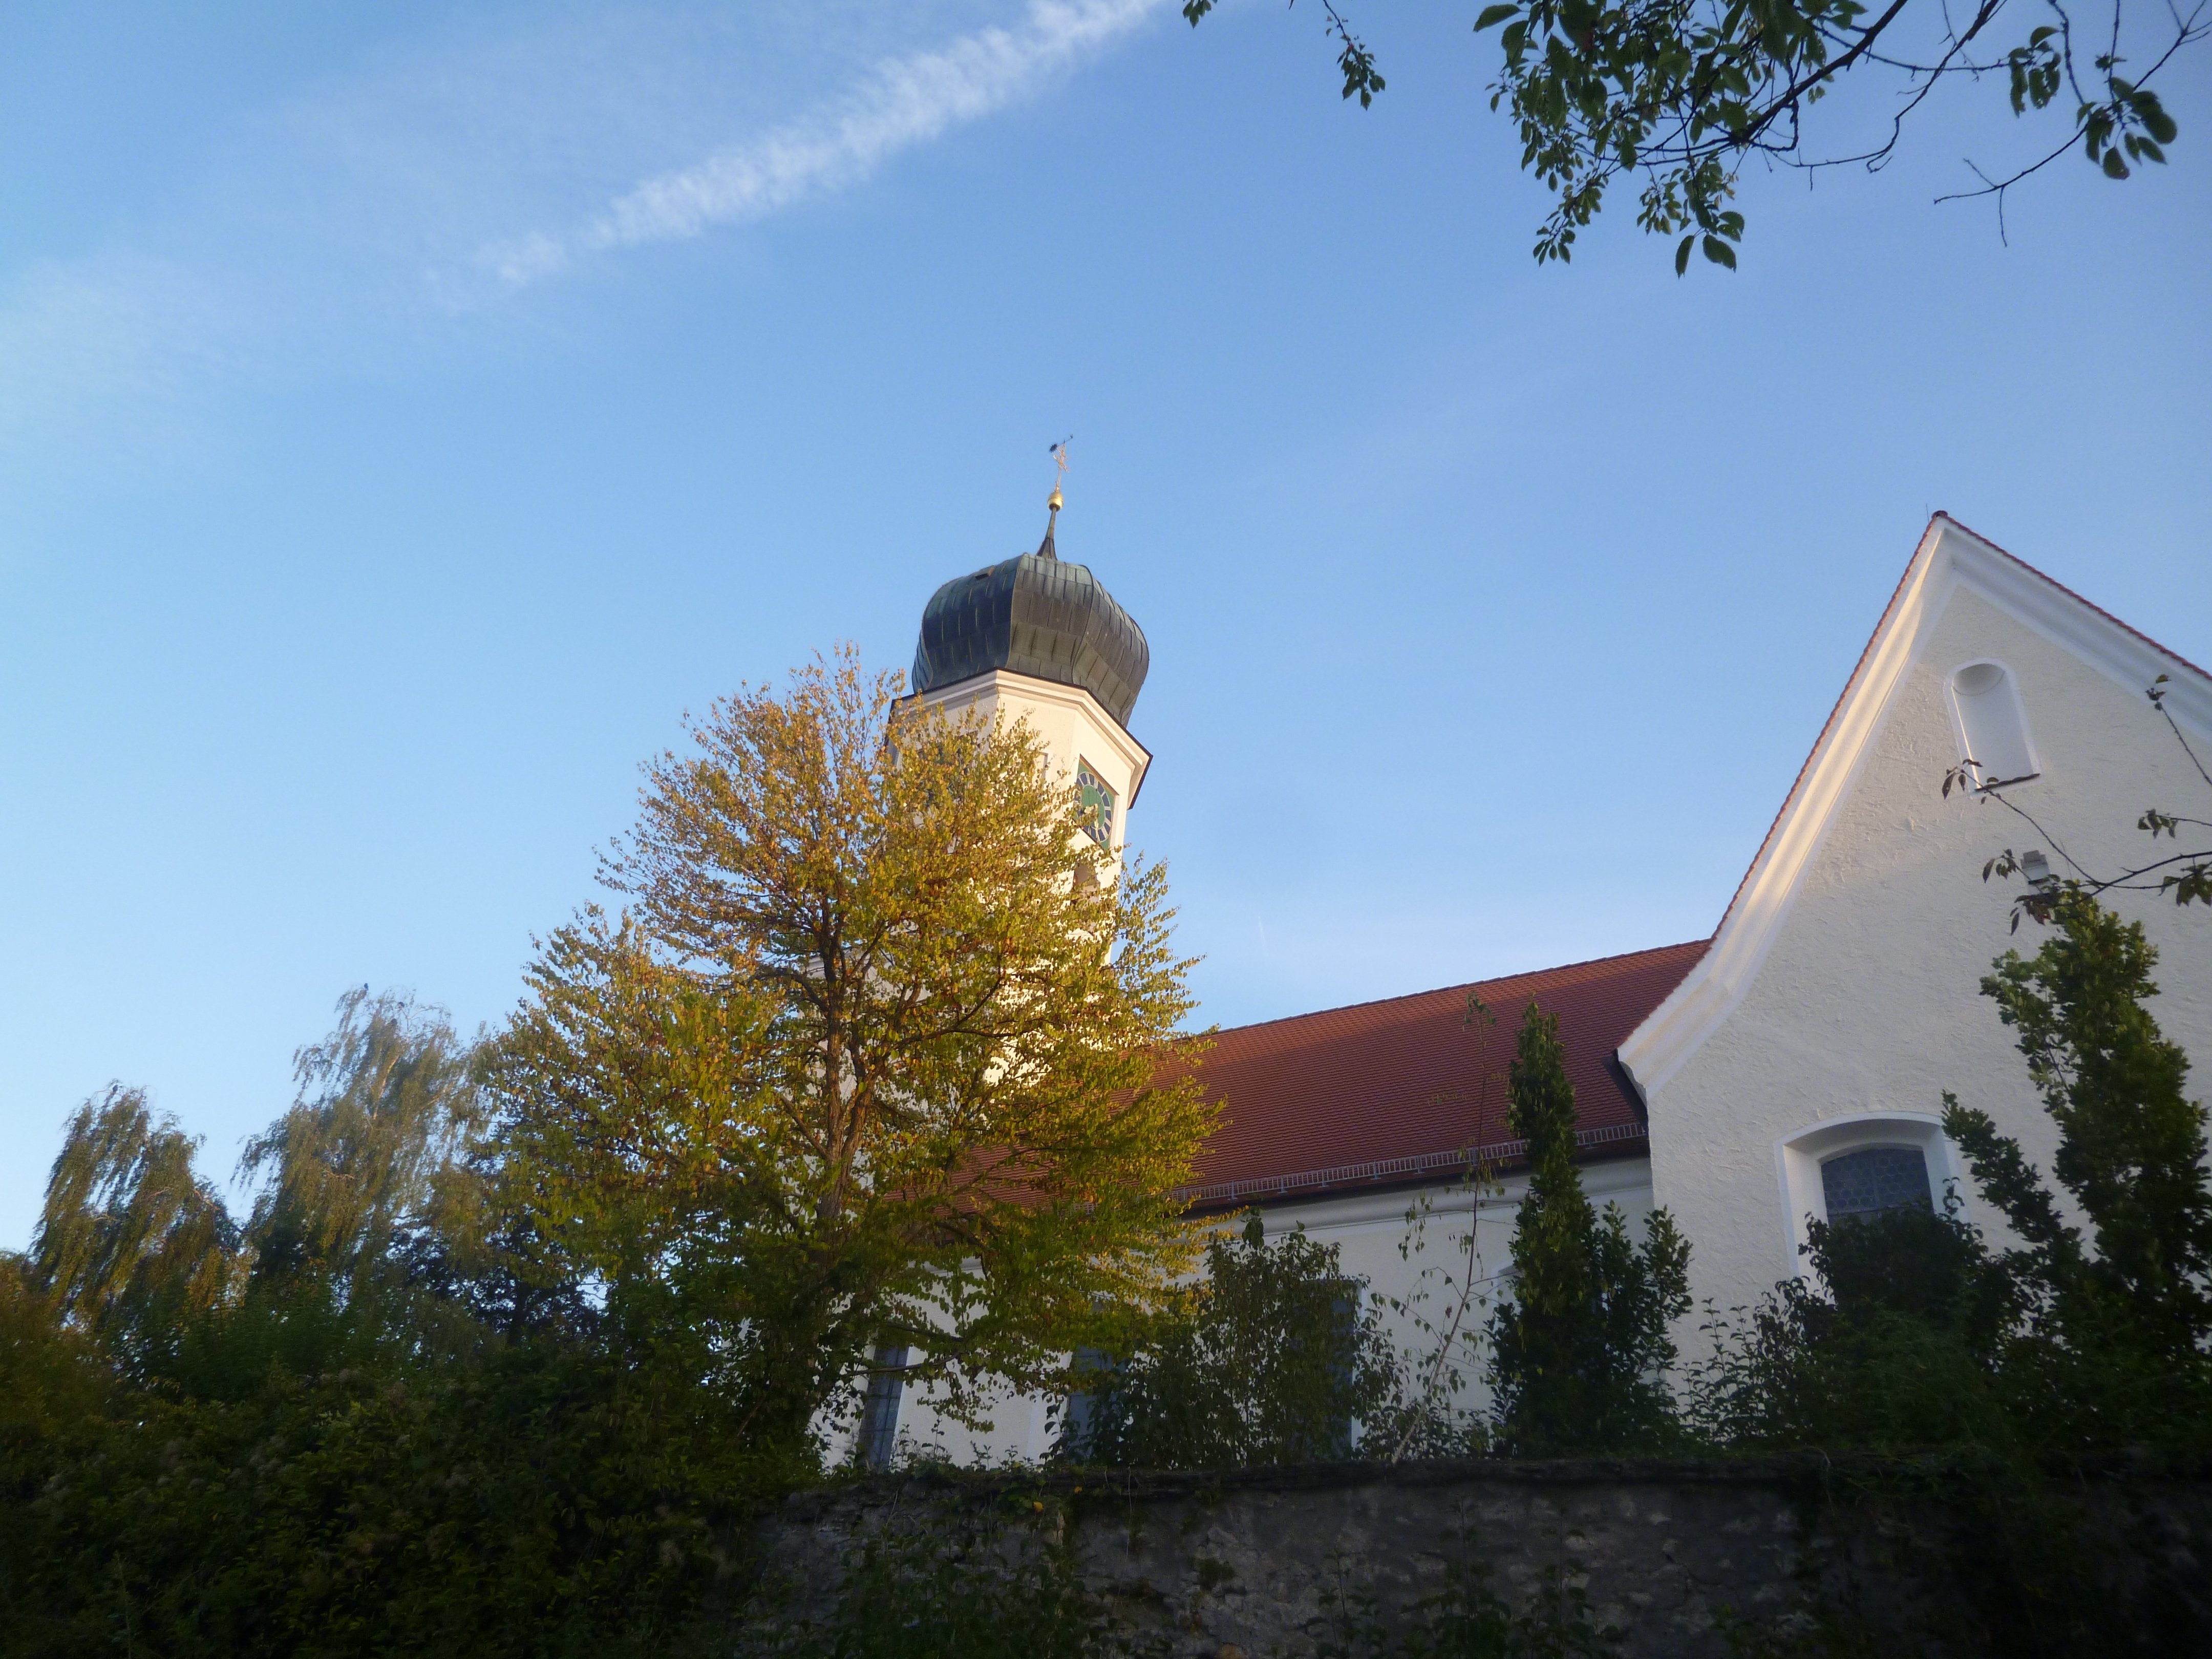  Wallfahrtskirche im Herbst 